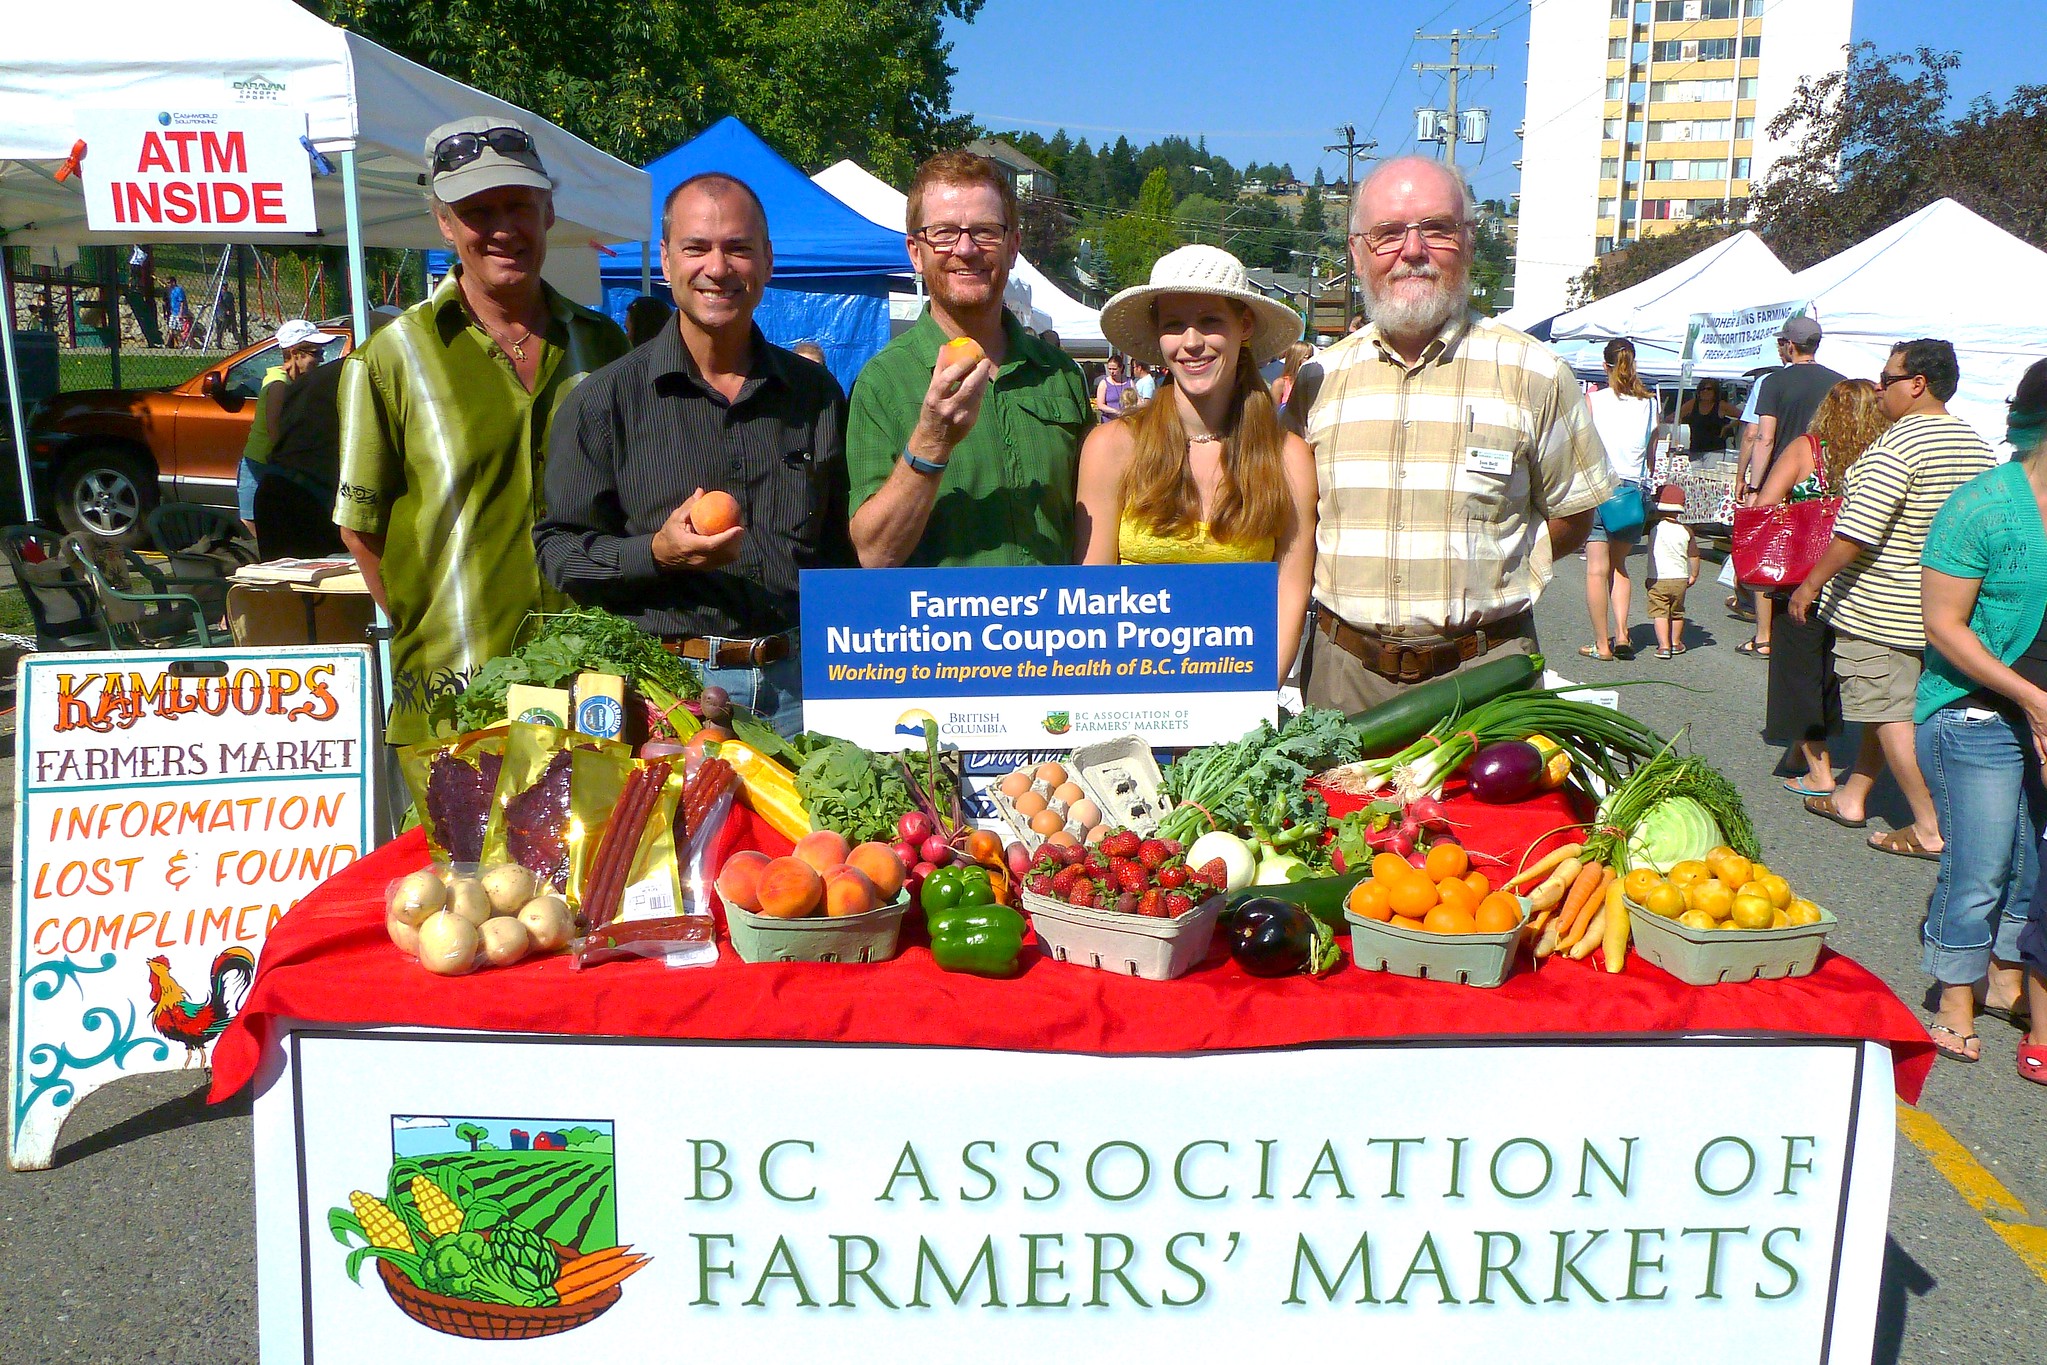 La gente sonríe alrededor de productos frescos y un letrero que dice “BC Association of Farmers' Markets”.